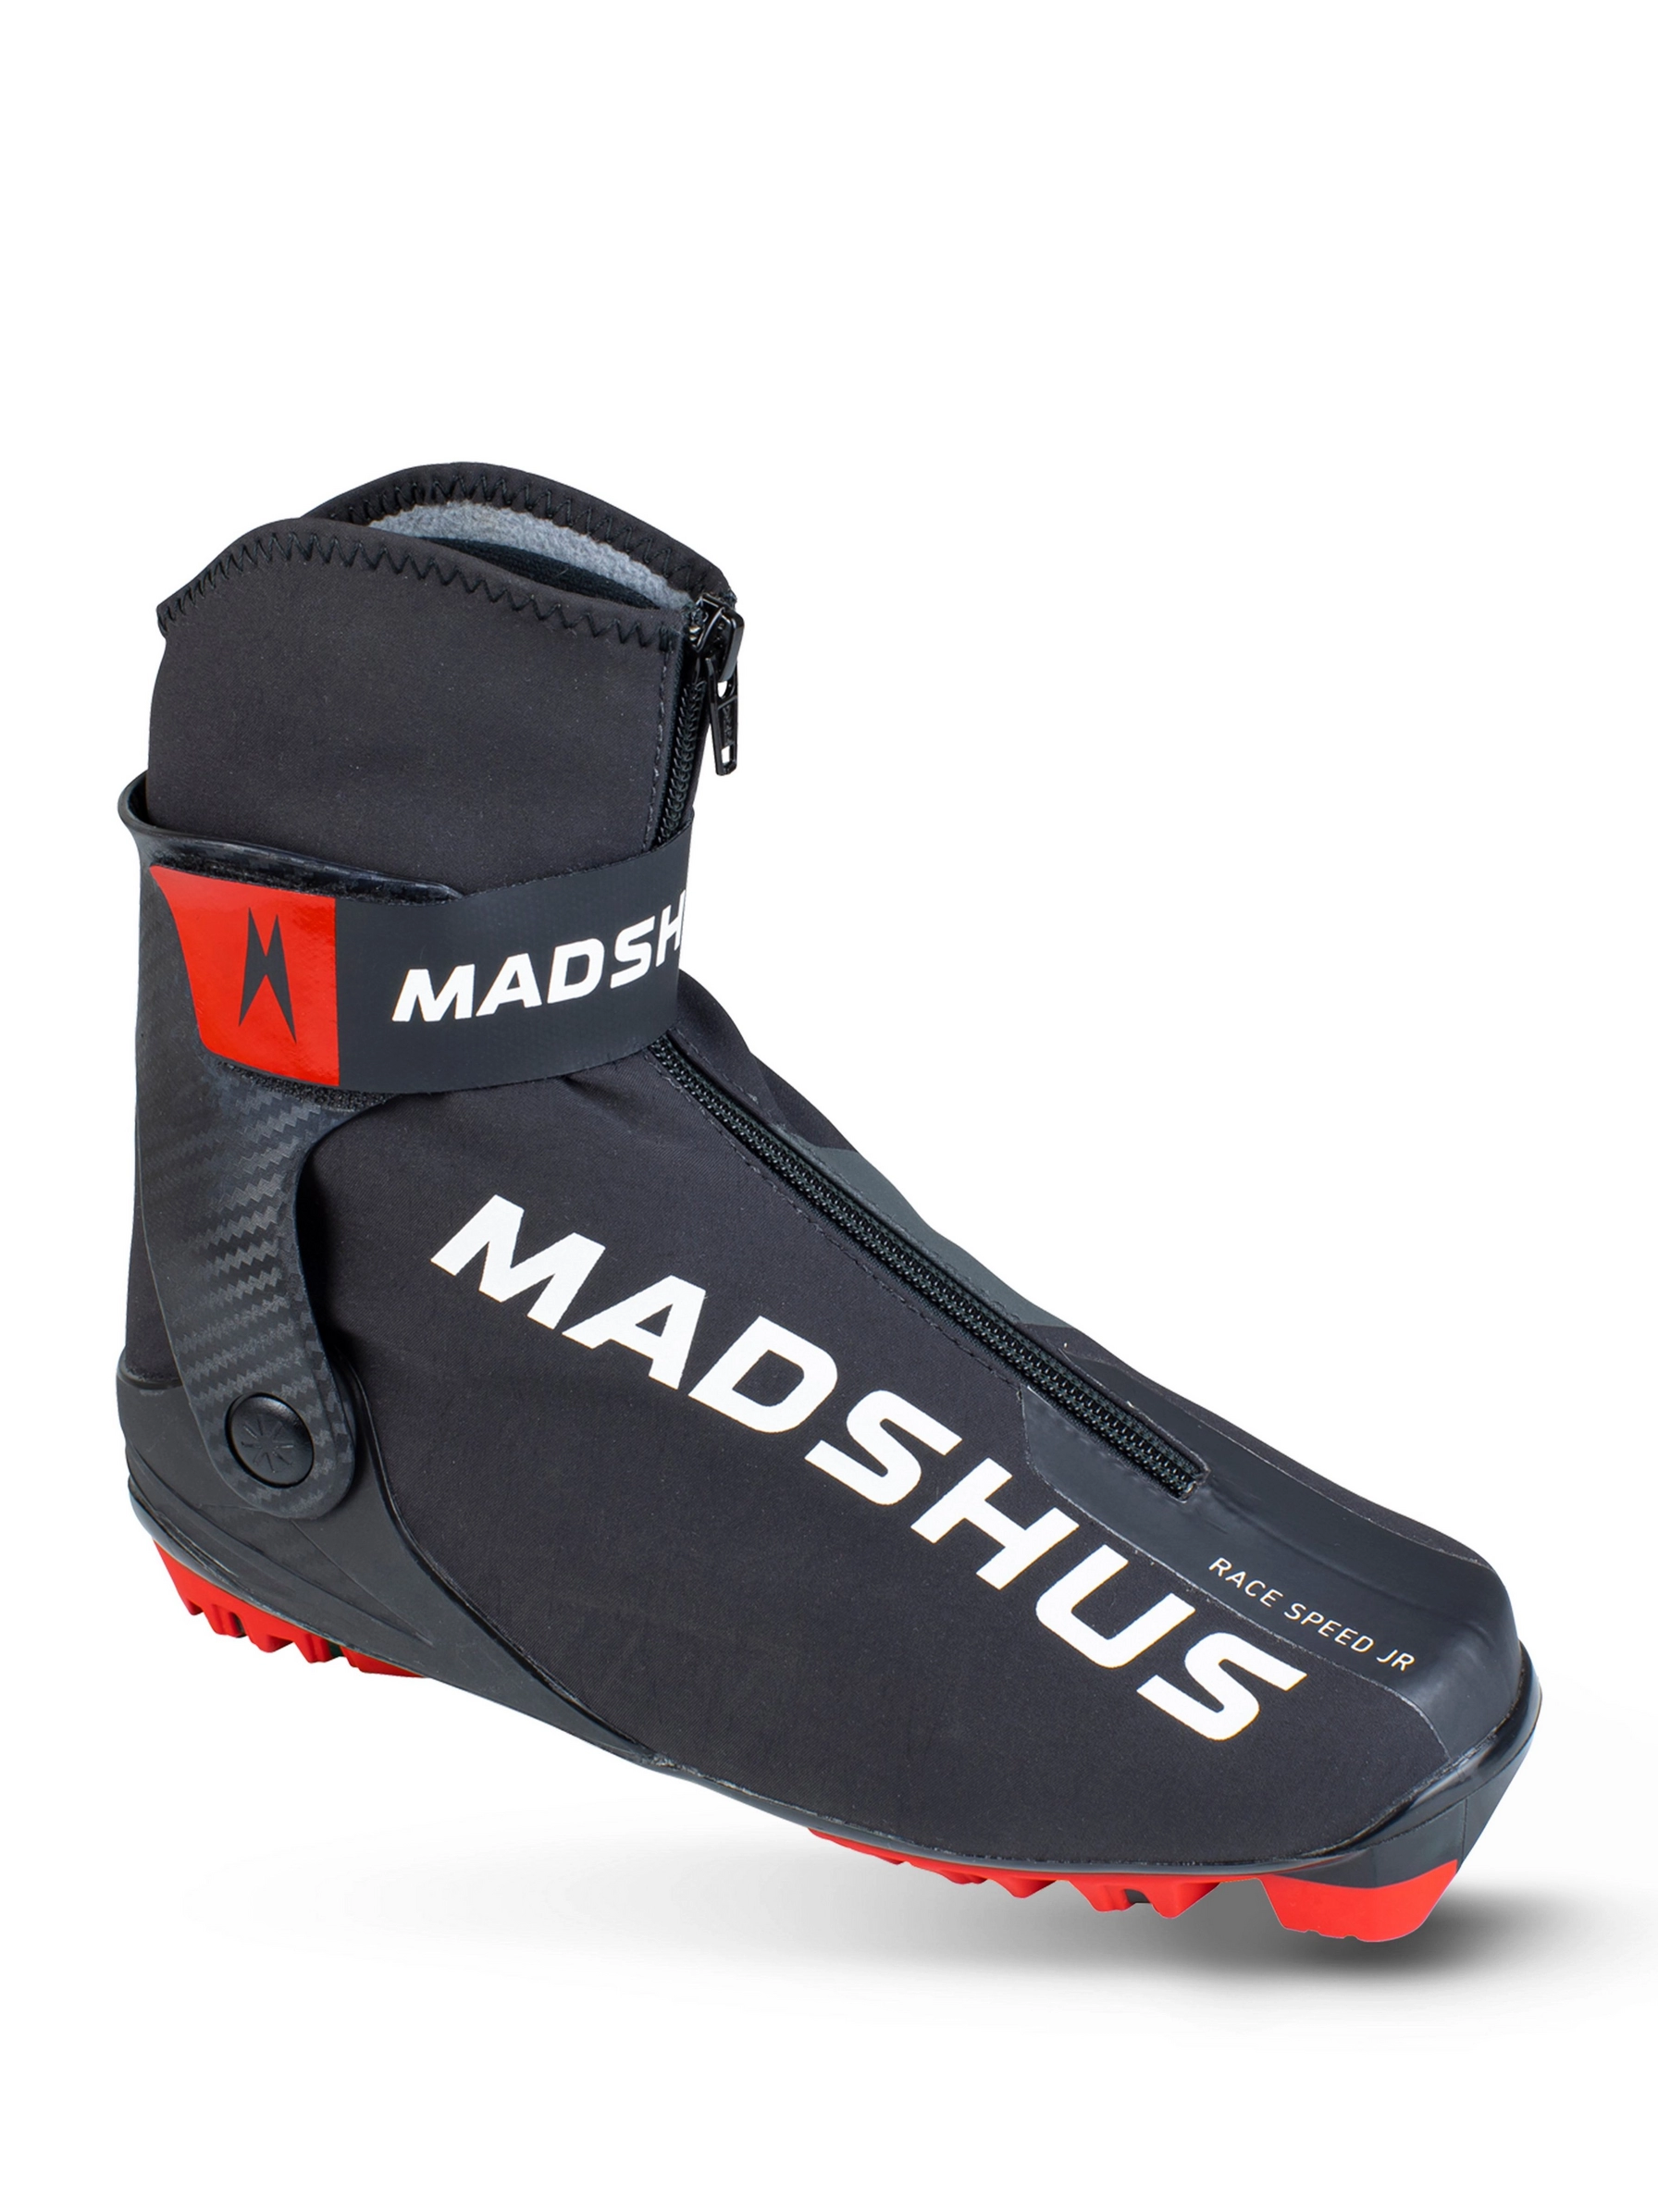 Madshus Race Speed Junior